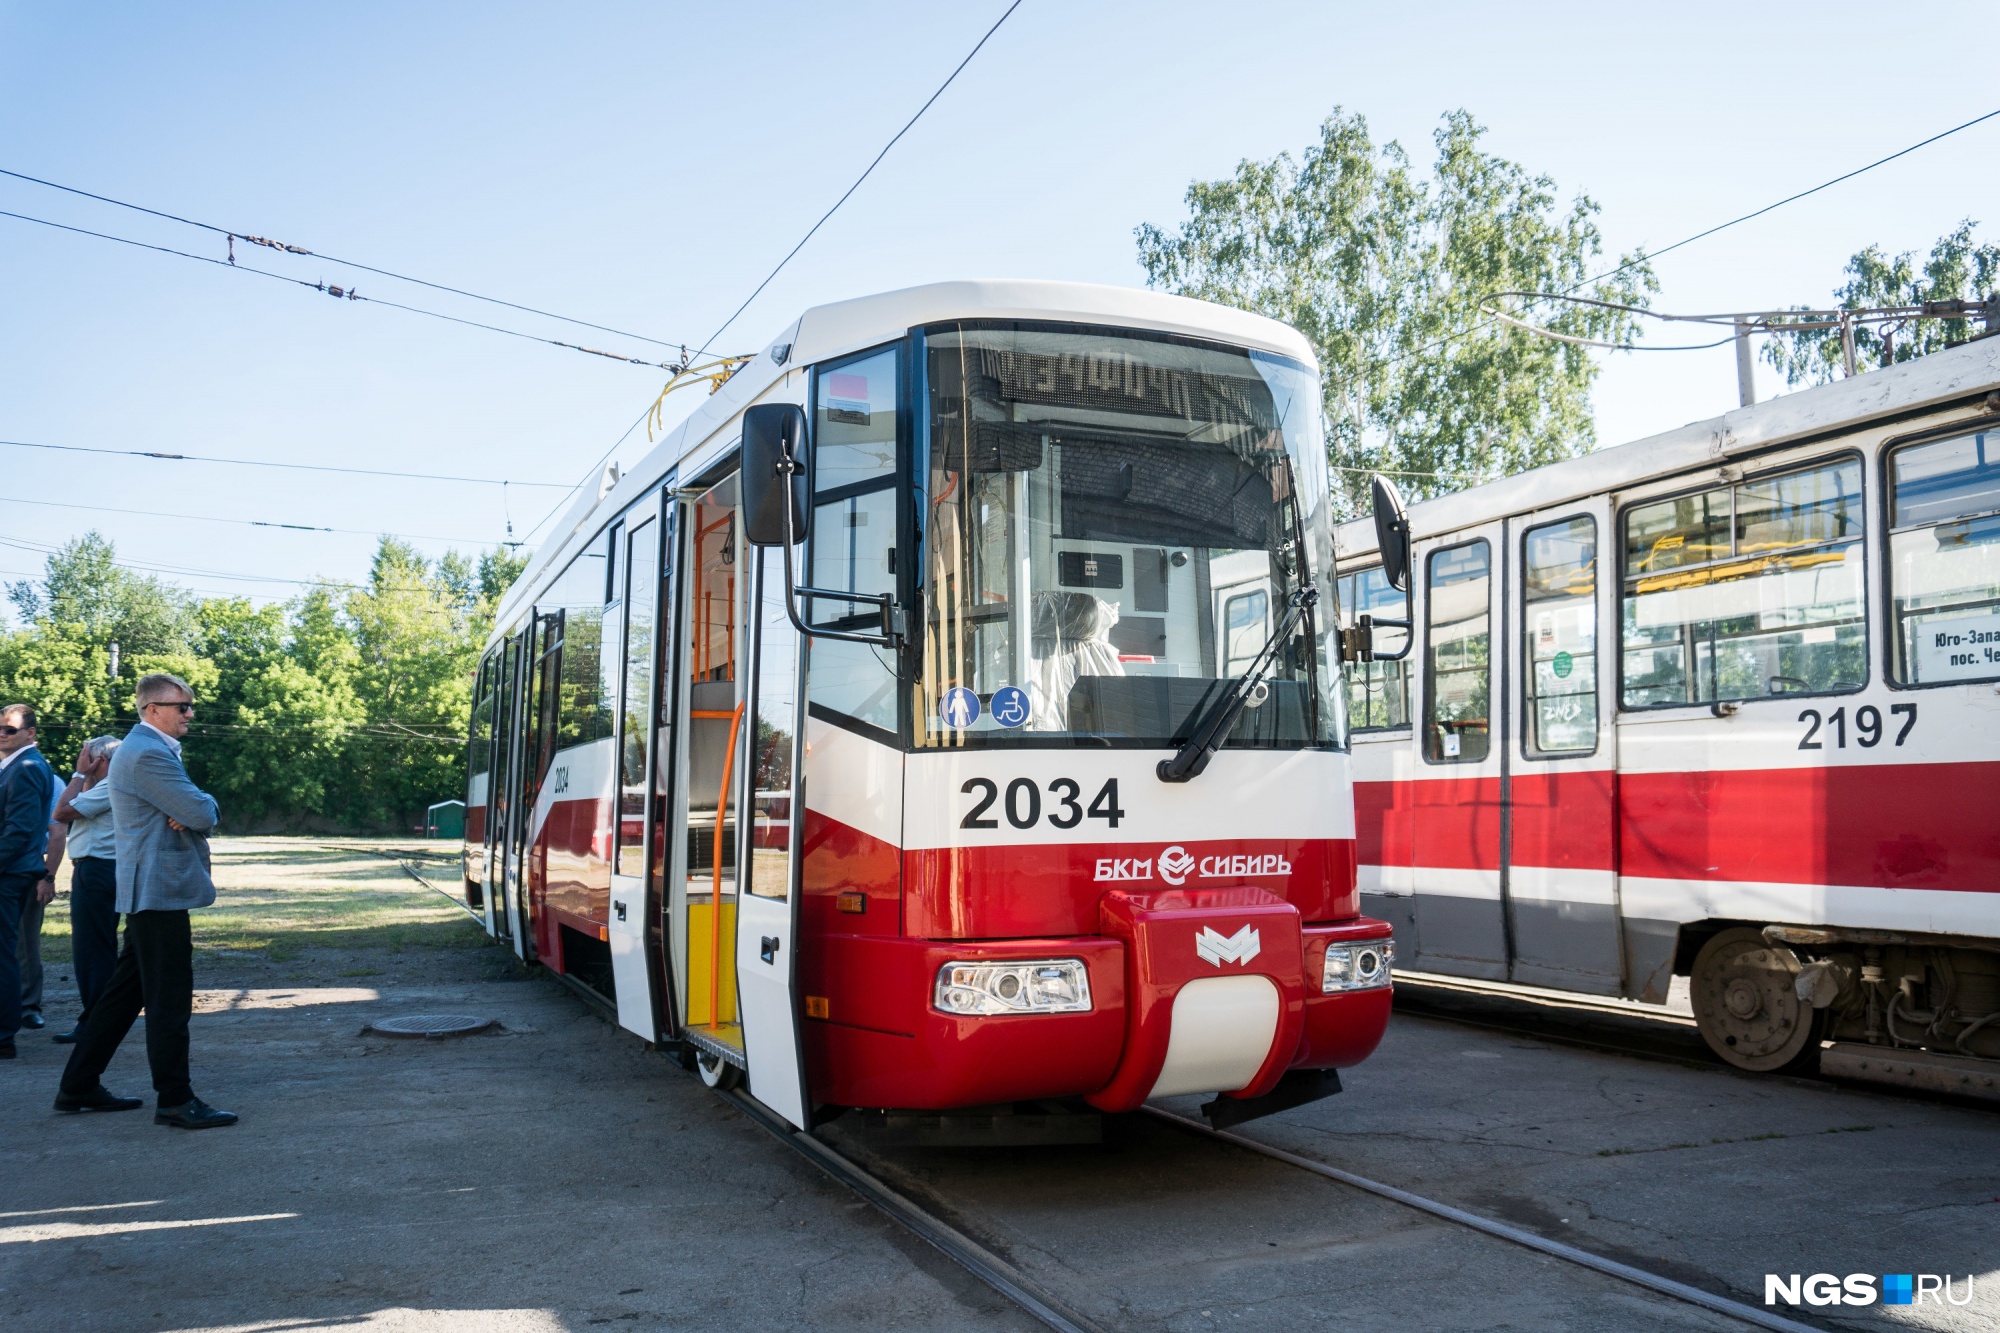 Подержанные трамваи и «троллейбусы как дрова». Сравниваем транспорт в Новосибирске с другими городами